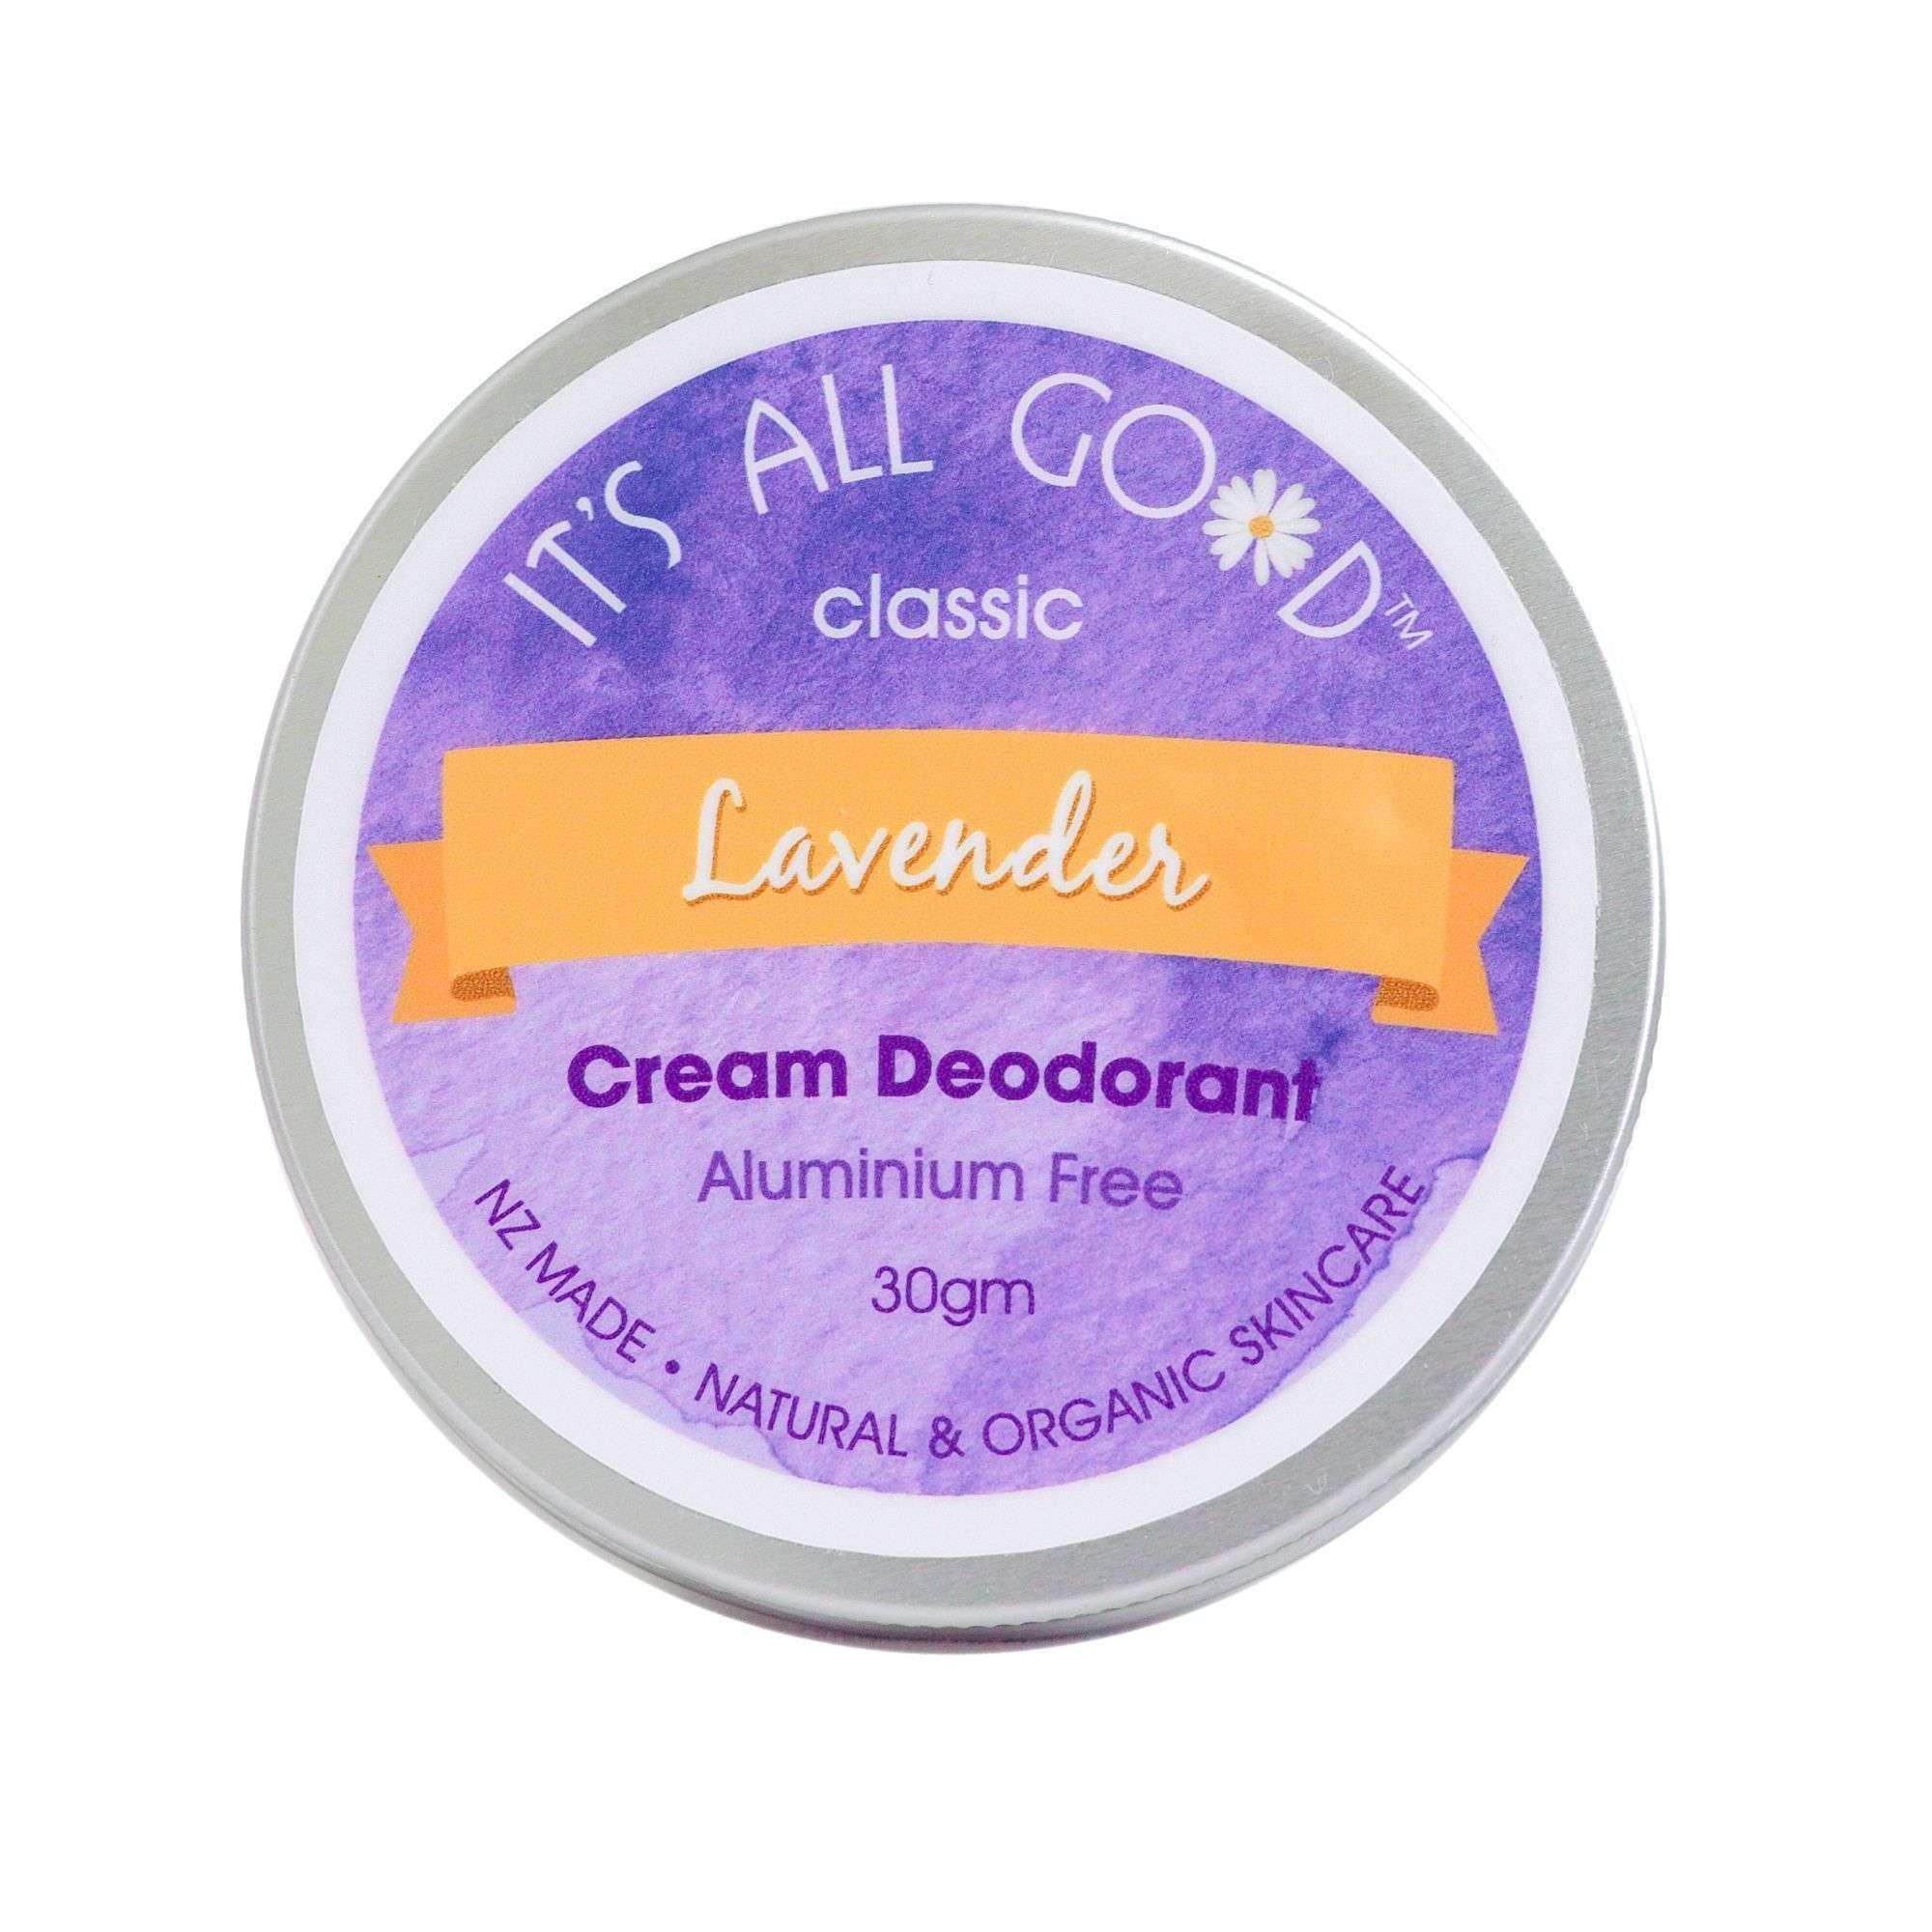 It's All Good Natural Cream Deodorant